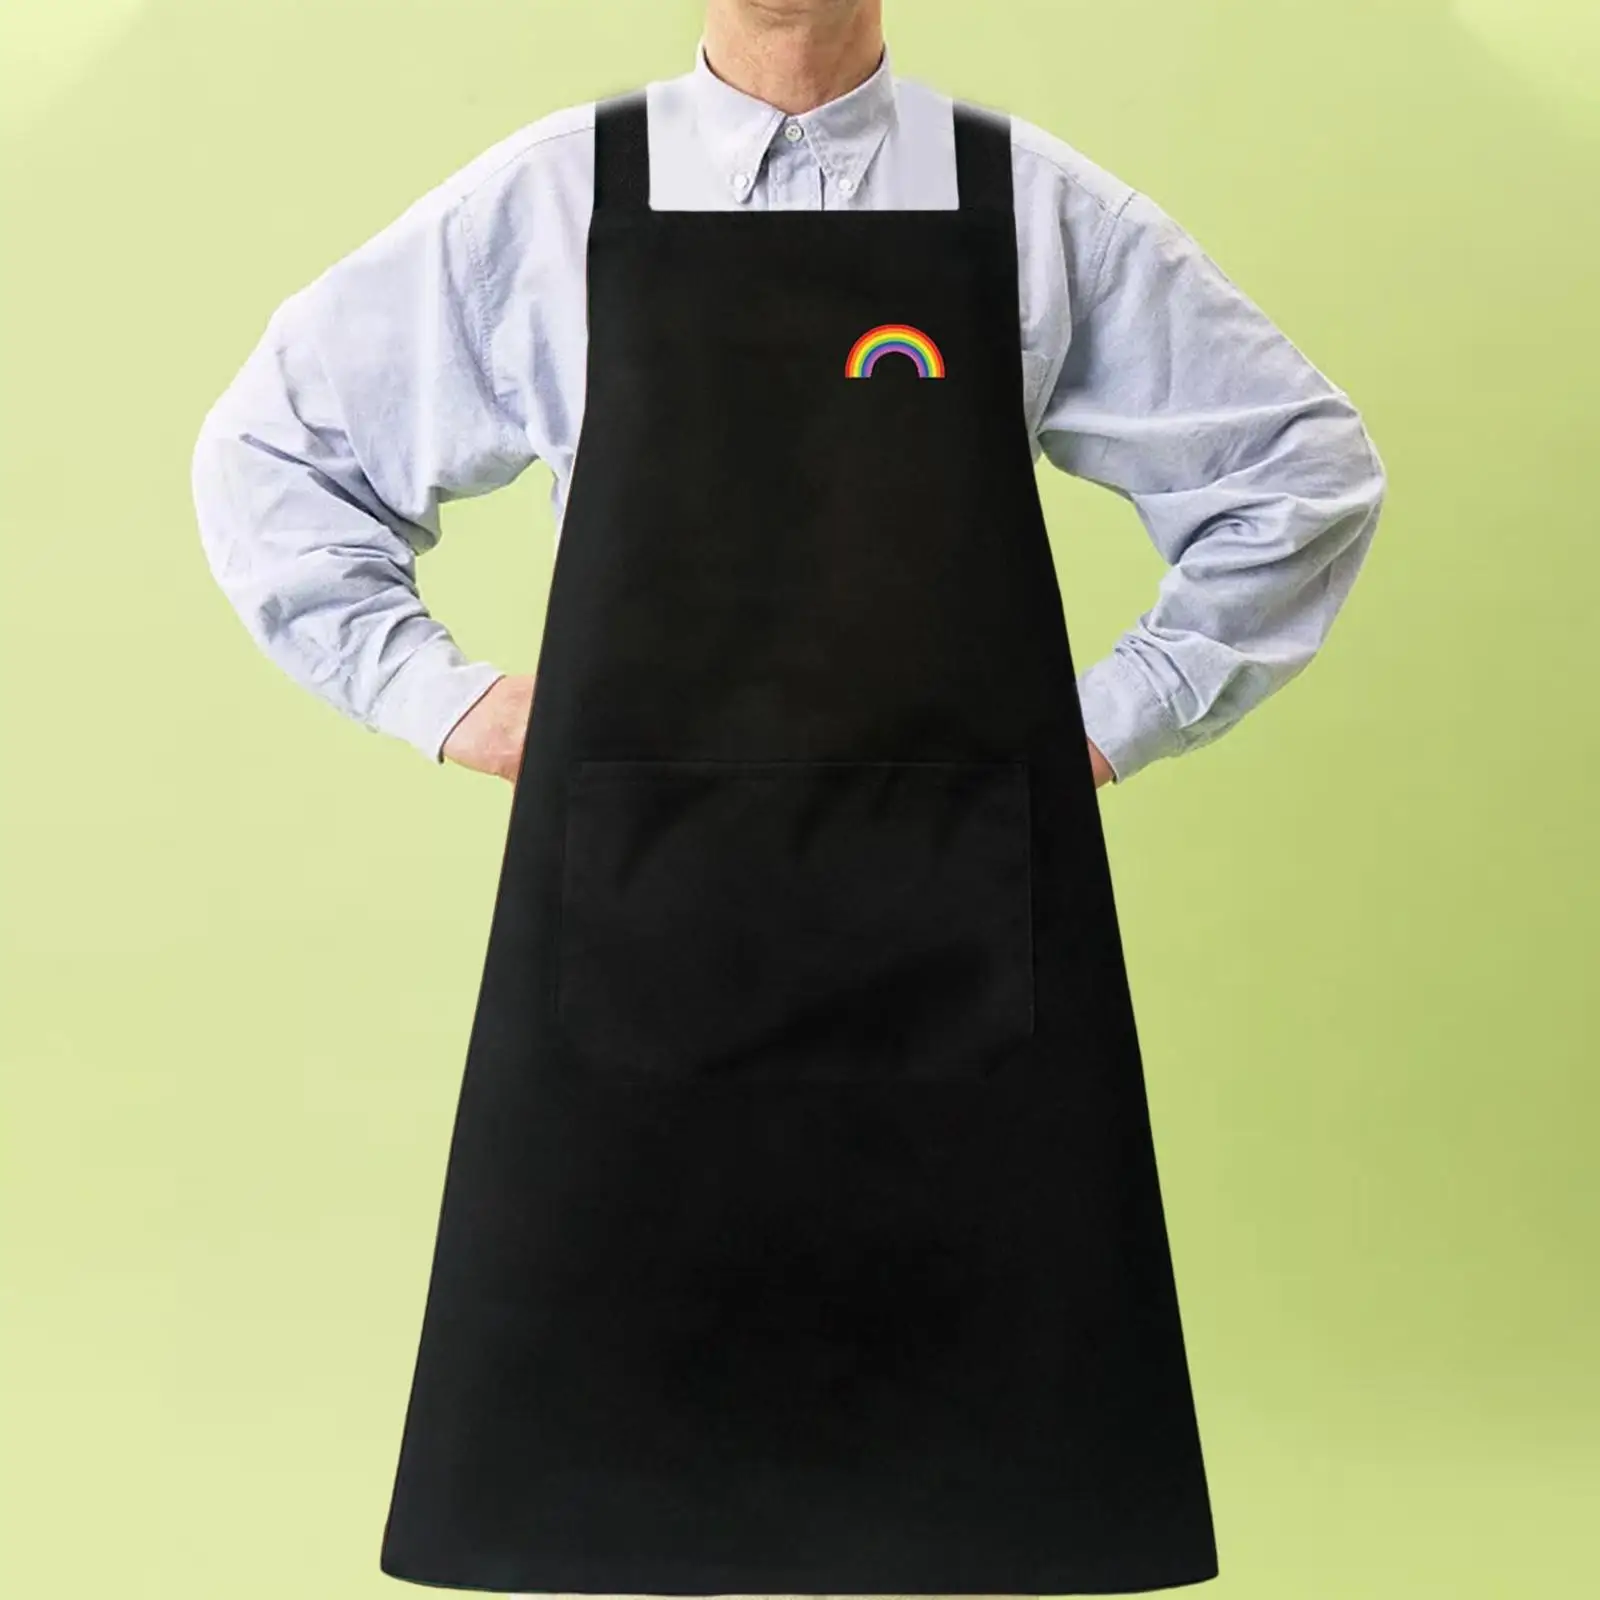 Kitchen apron with Pockets Adjustable Waterproof Bib Chef apron for Kitchen Garden Barbeque Chefs Restaurants